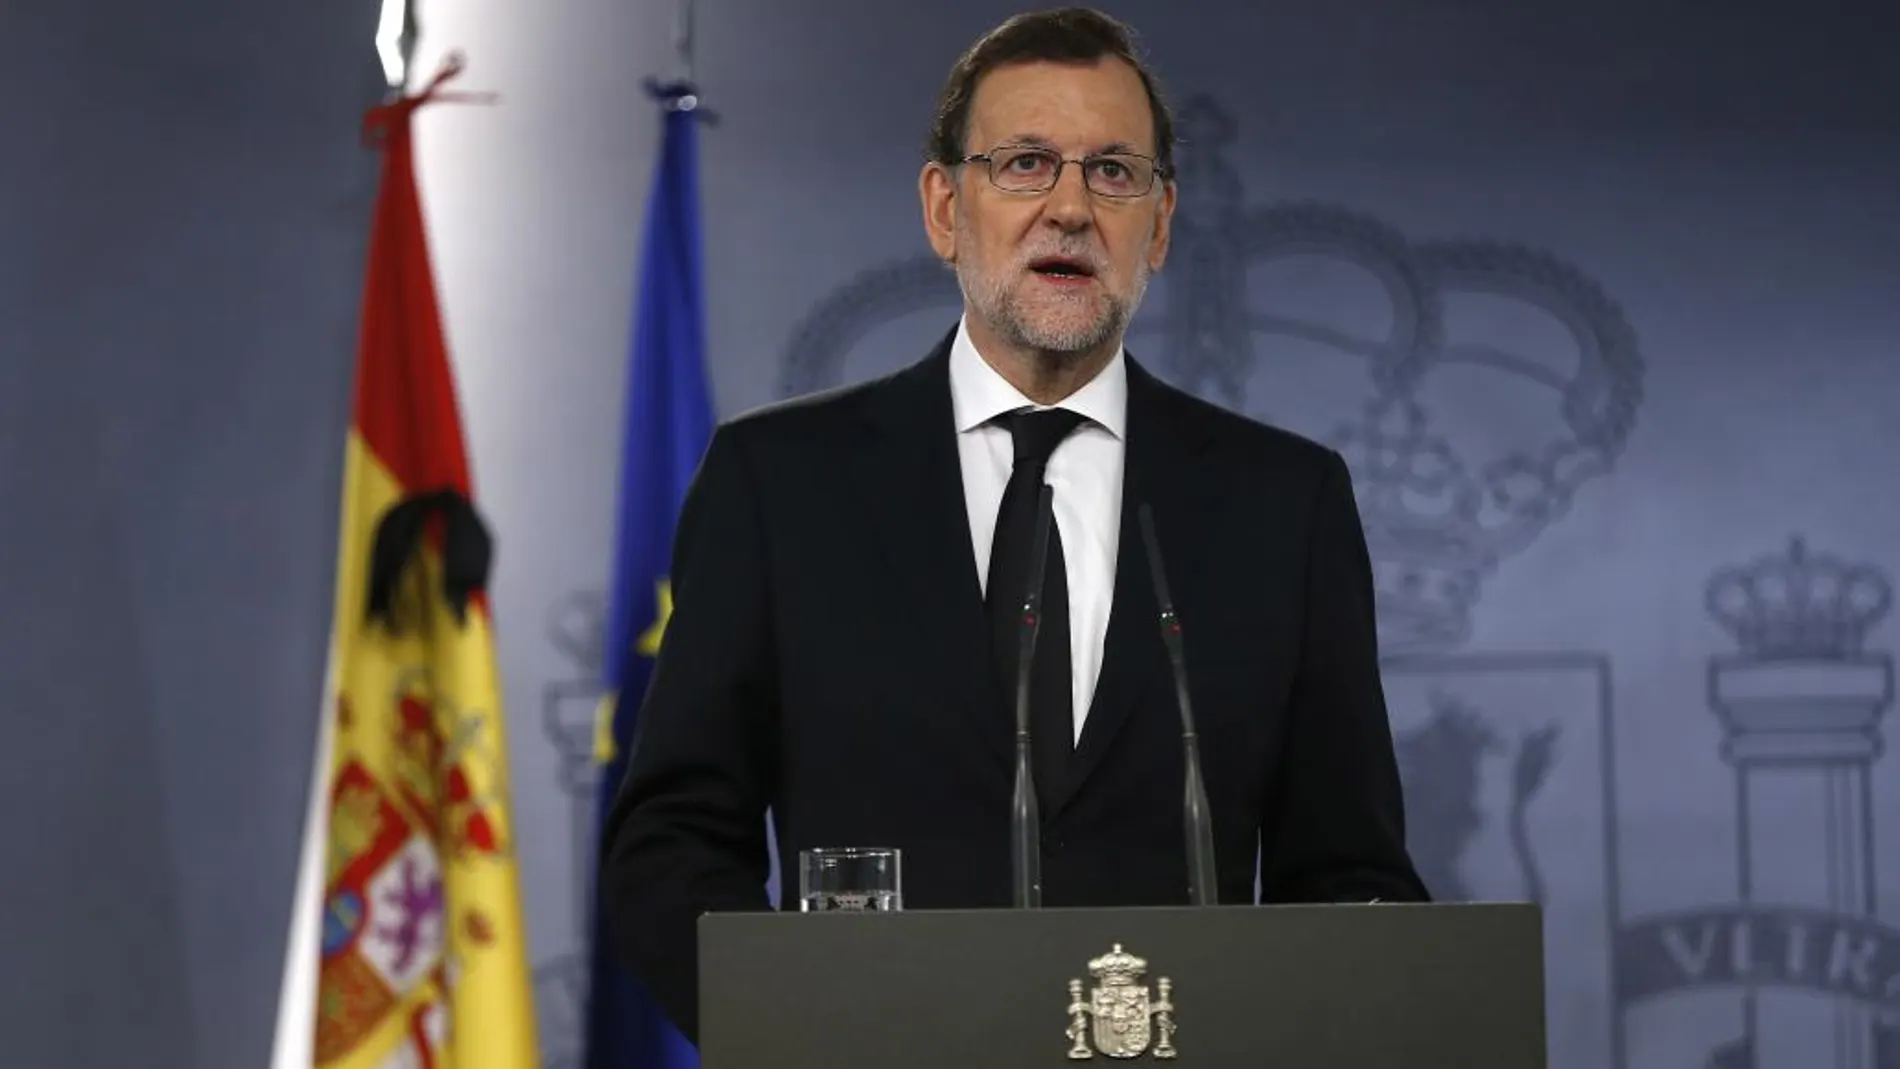 El presidente del Gobierno, Mariano Rajoy, durante su comparecencia hoy en el Palacio de la Moncloa